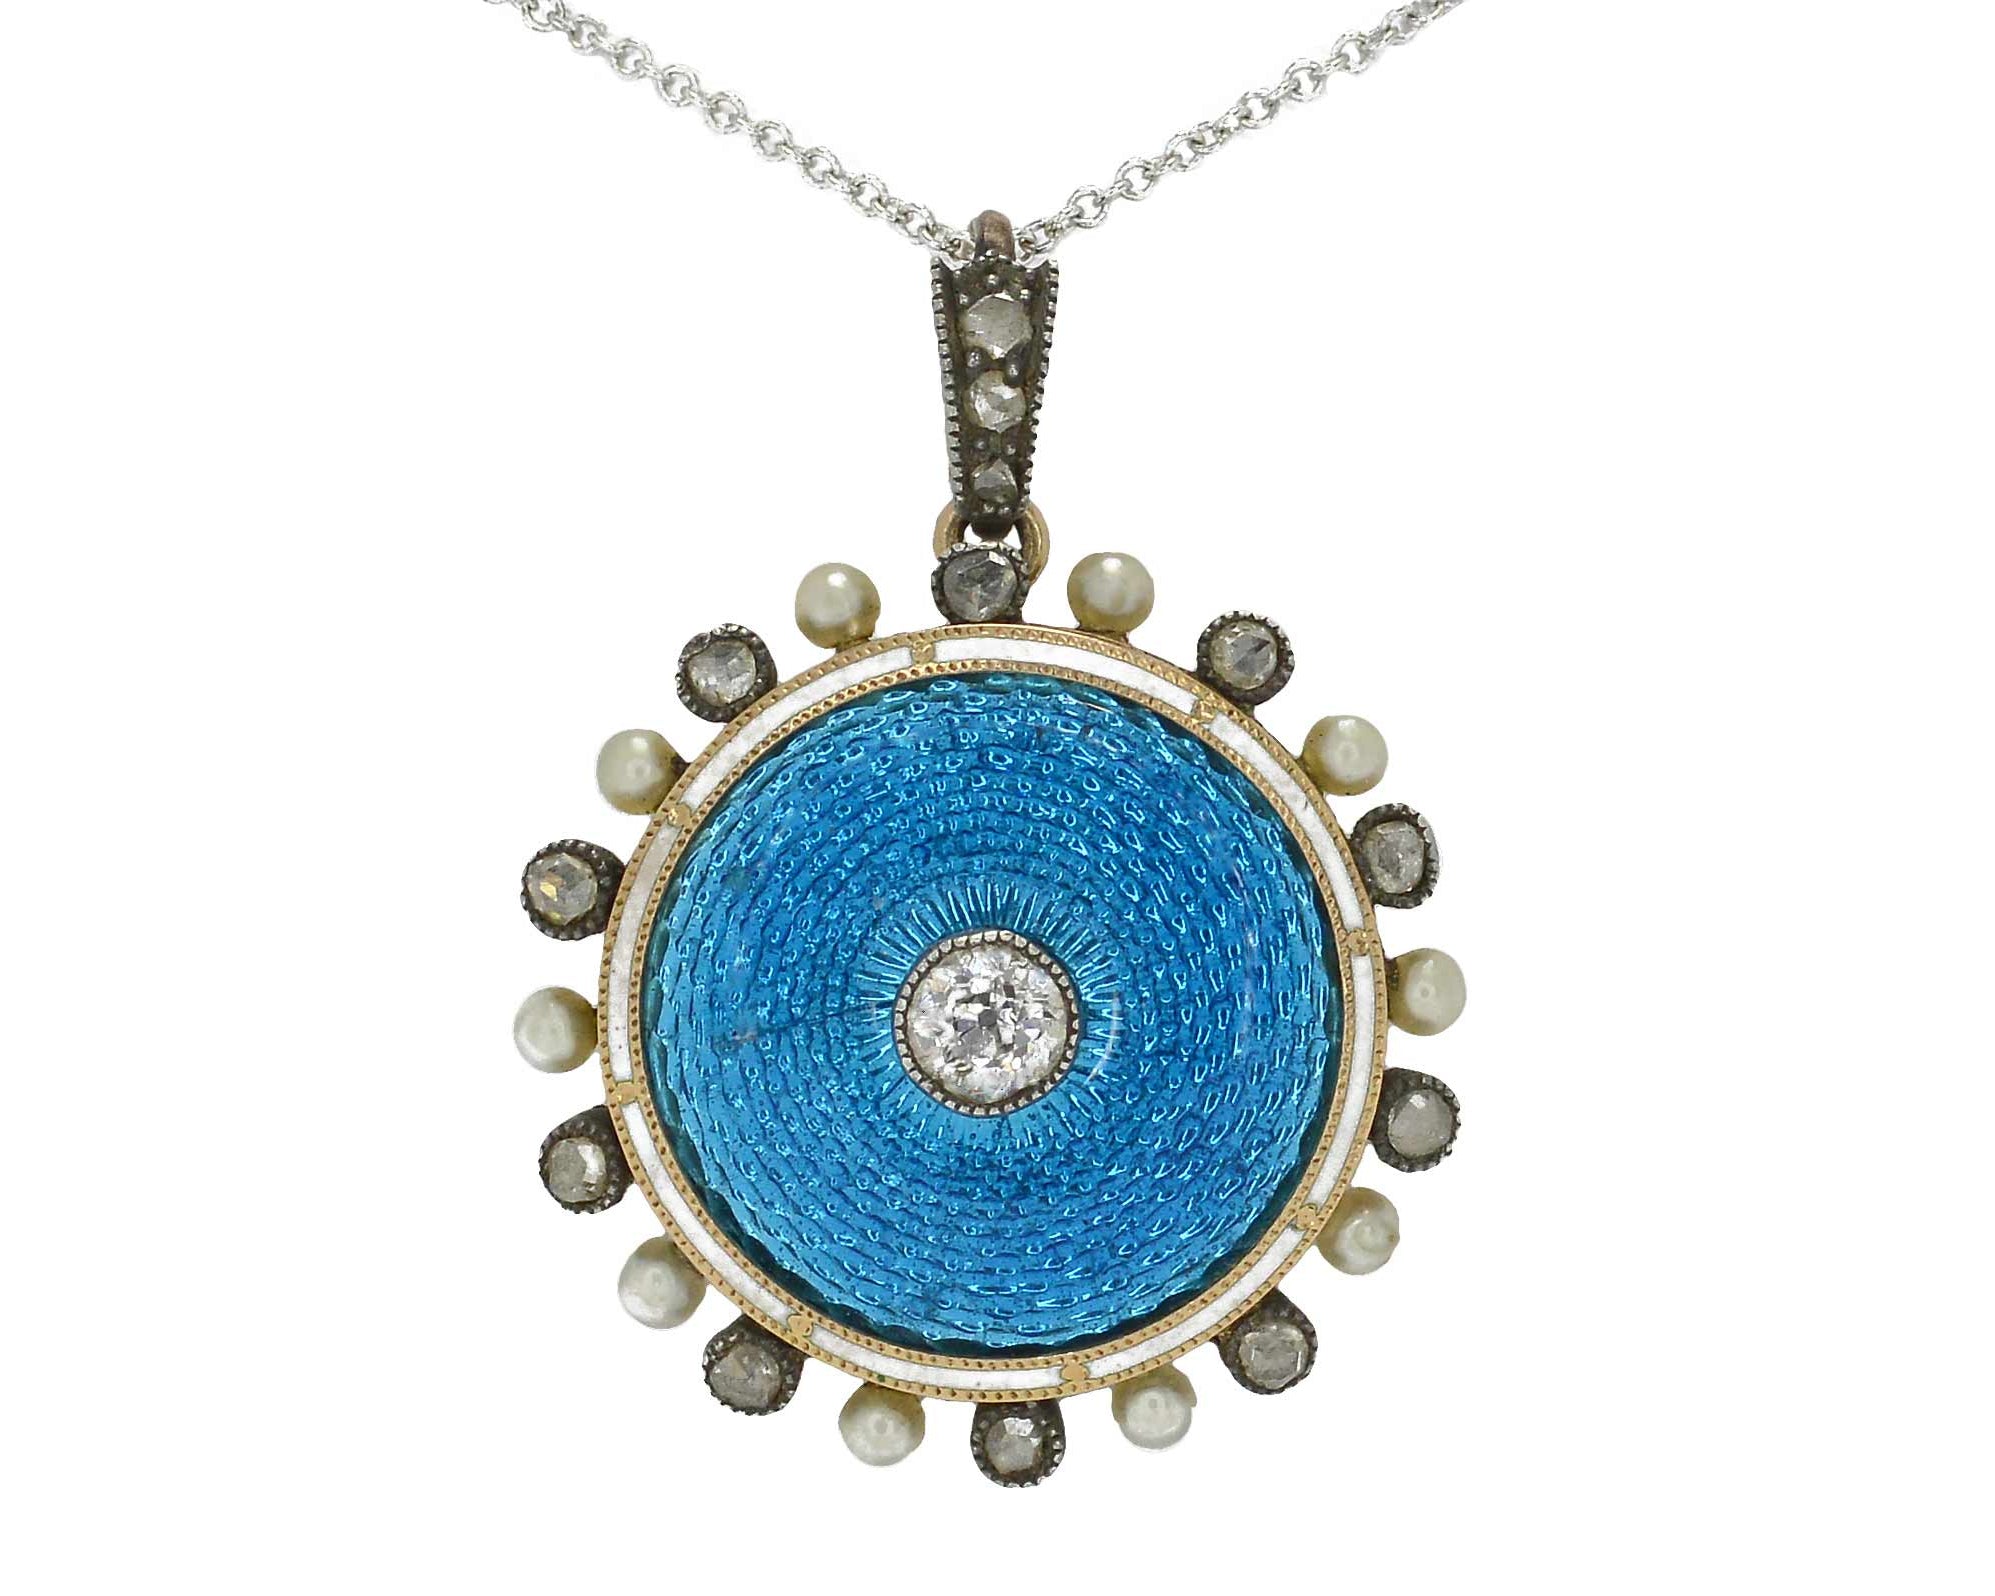 A Belle Epoque Faberge' style guilloche' enamel pendant necklace.